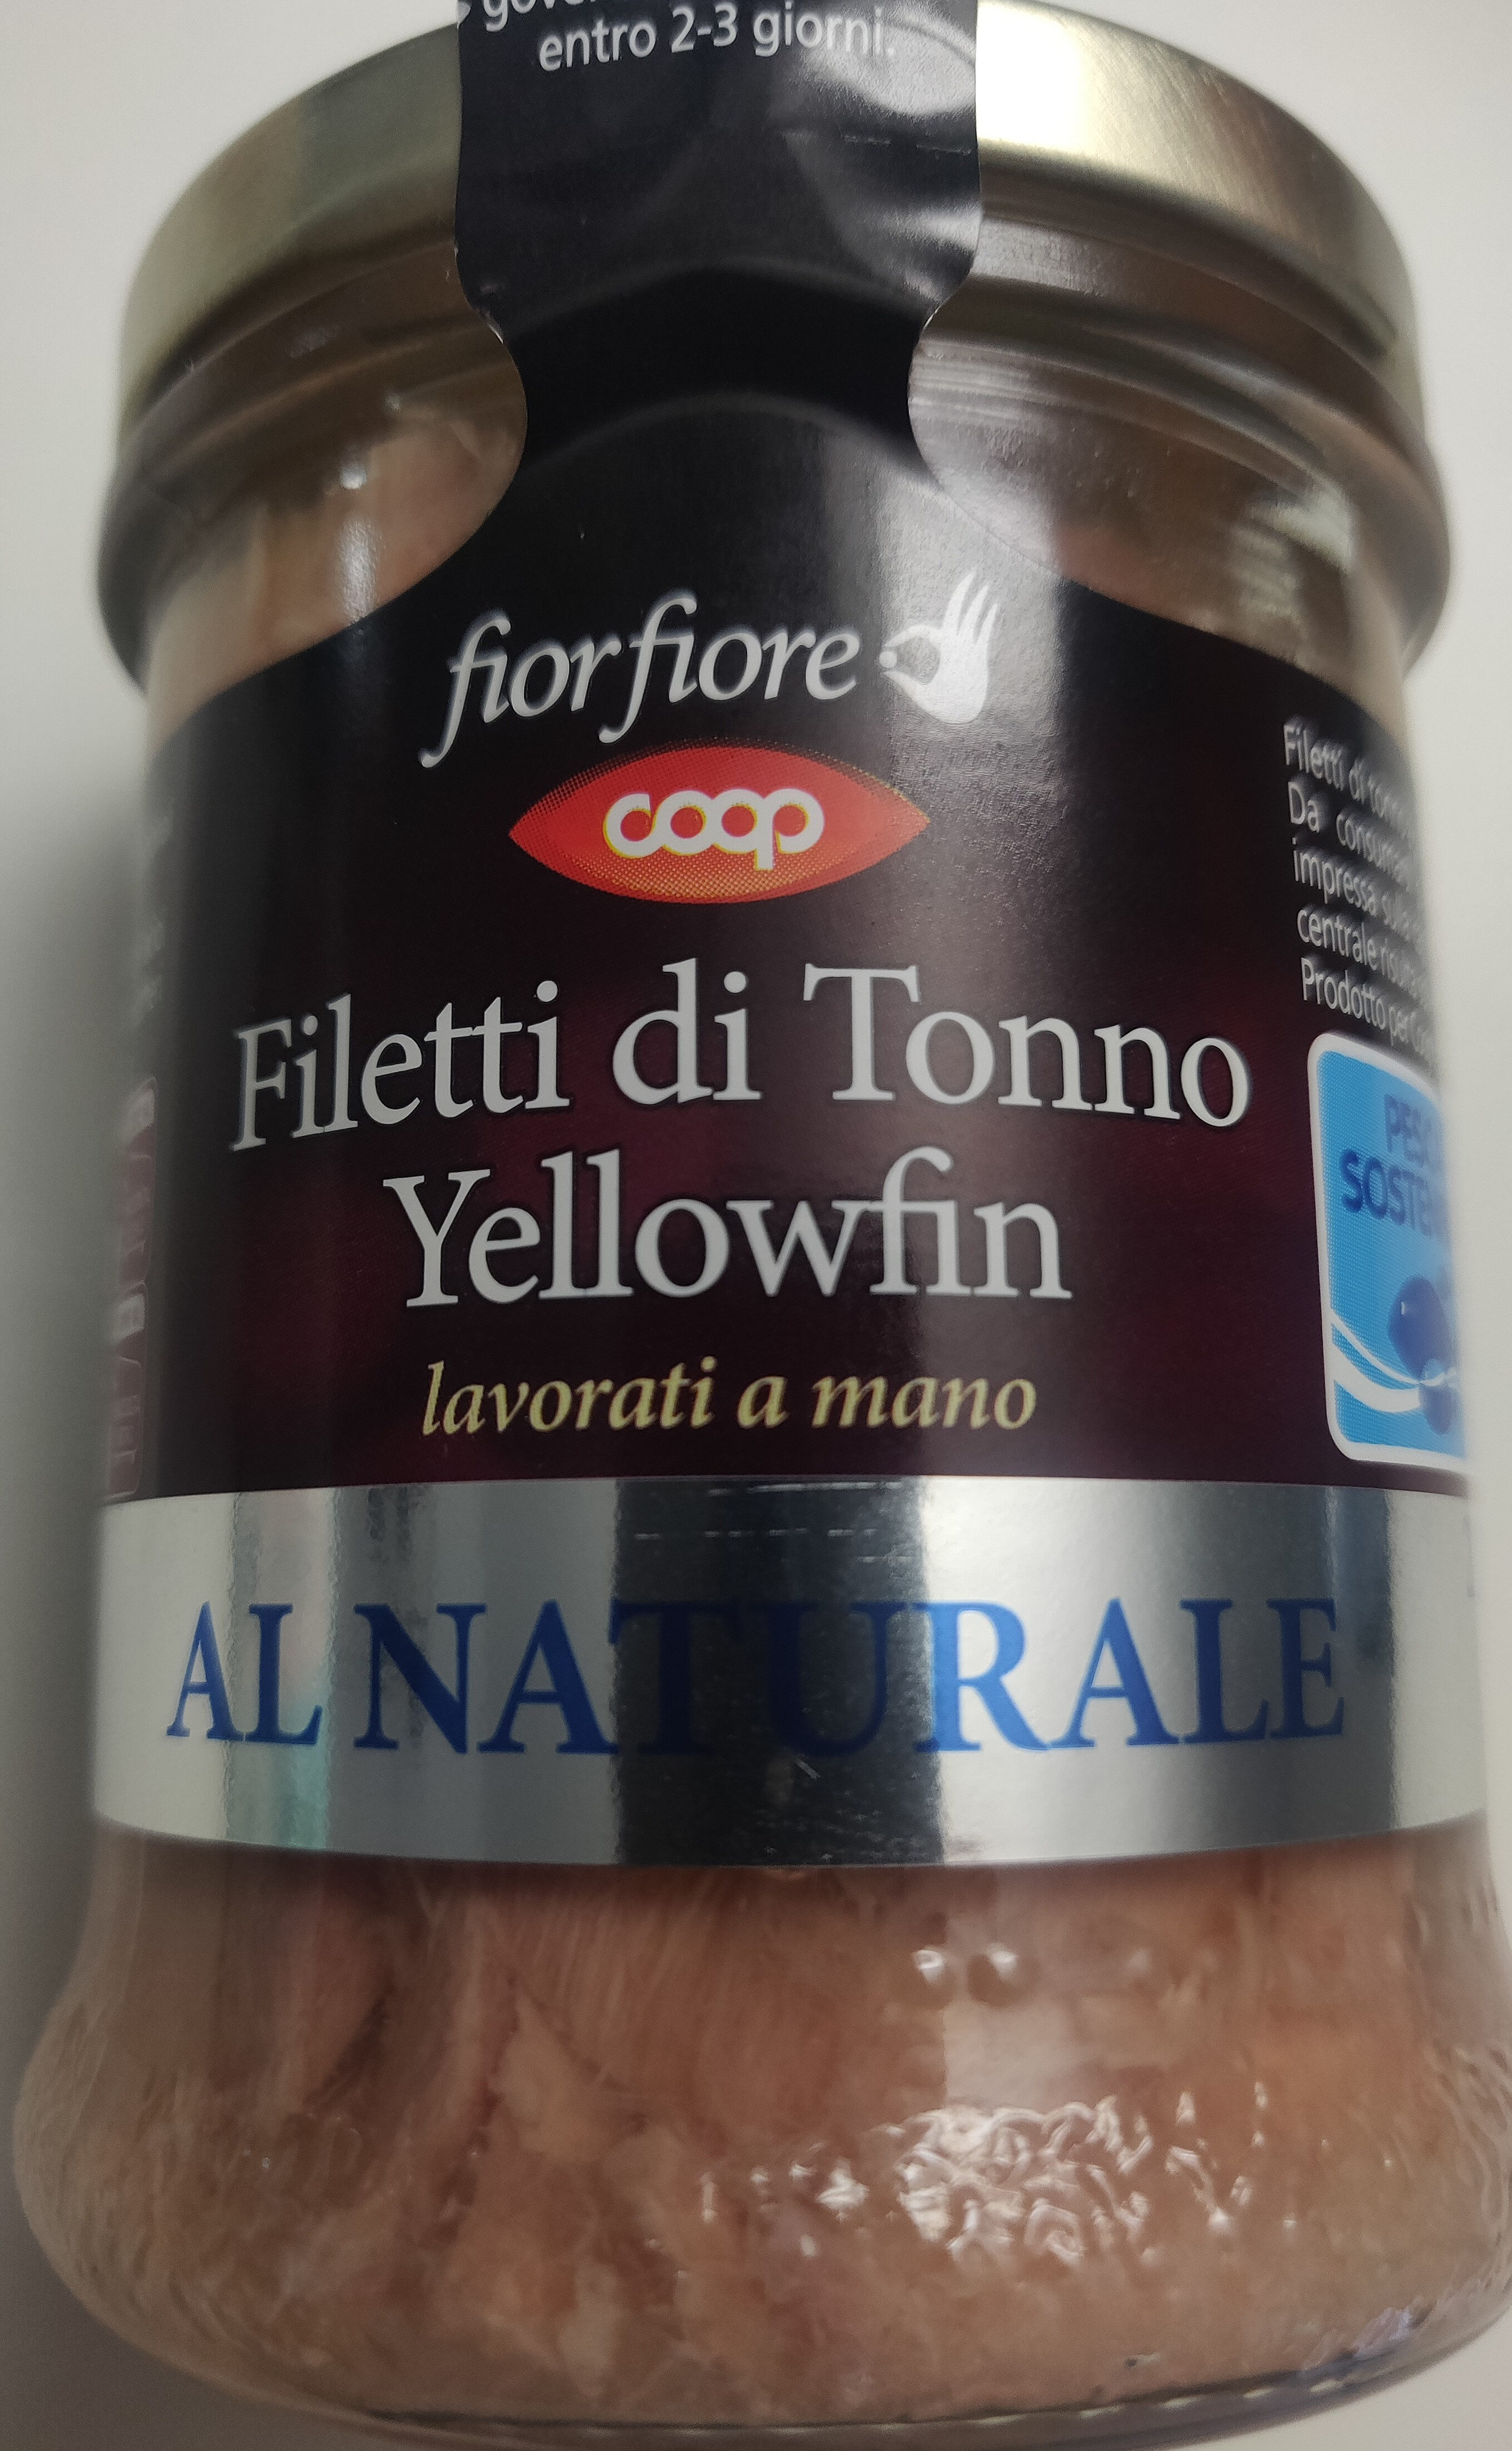 Filetti di tonno yellowfin al naturale - Prodotto